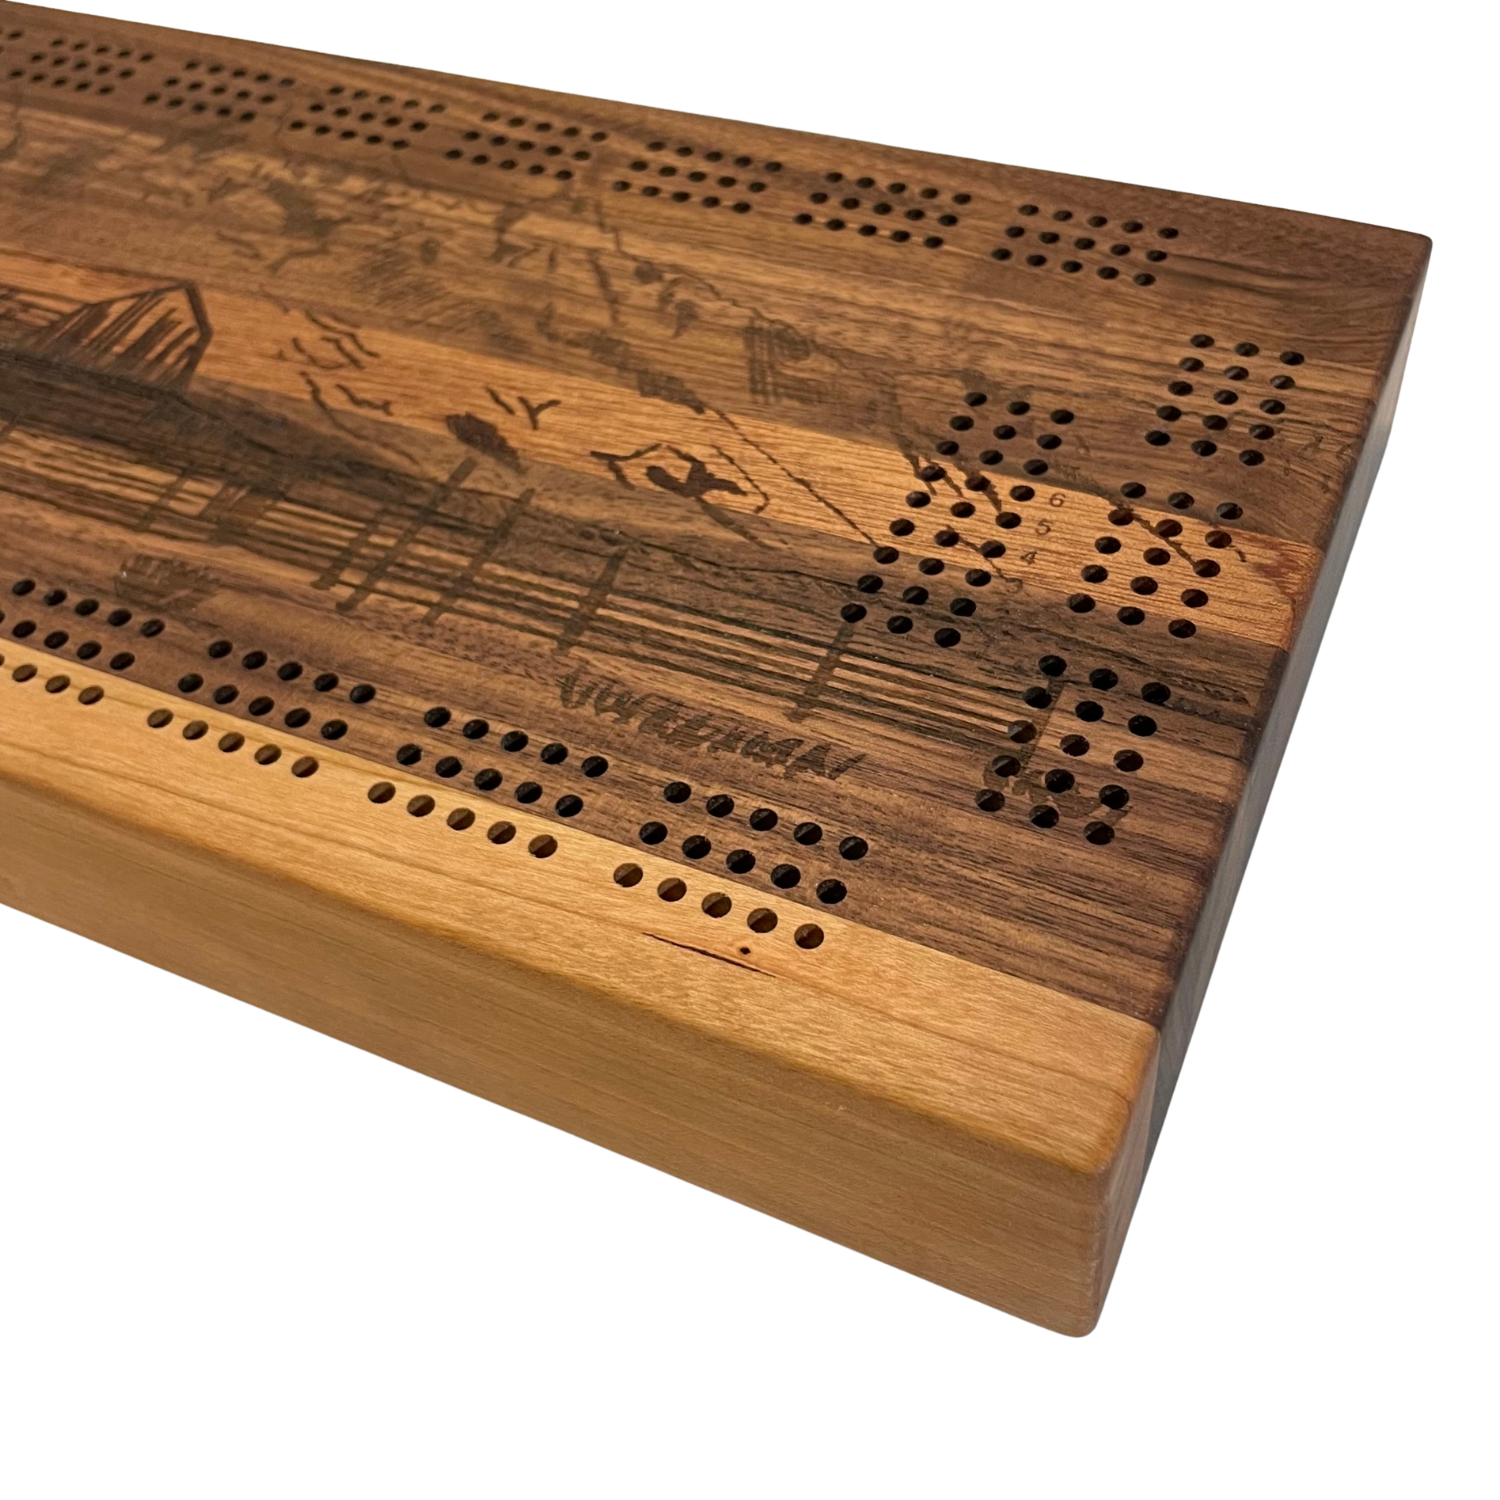 Mormon Row Wooden Cribbage Board